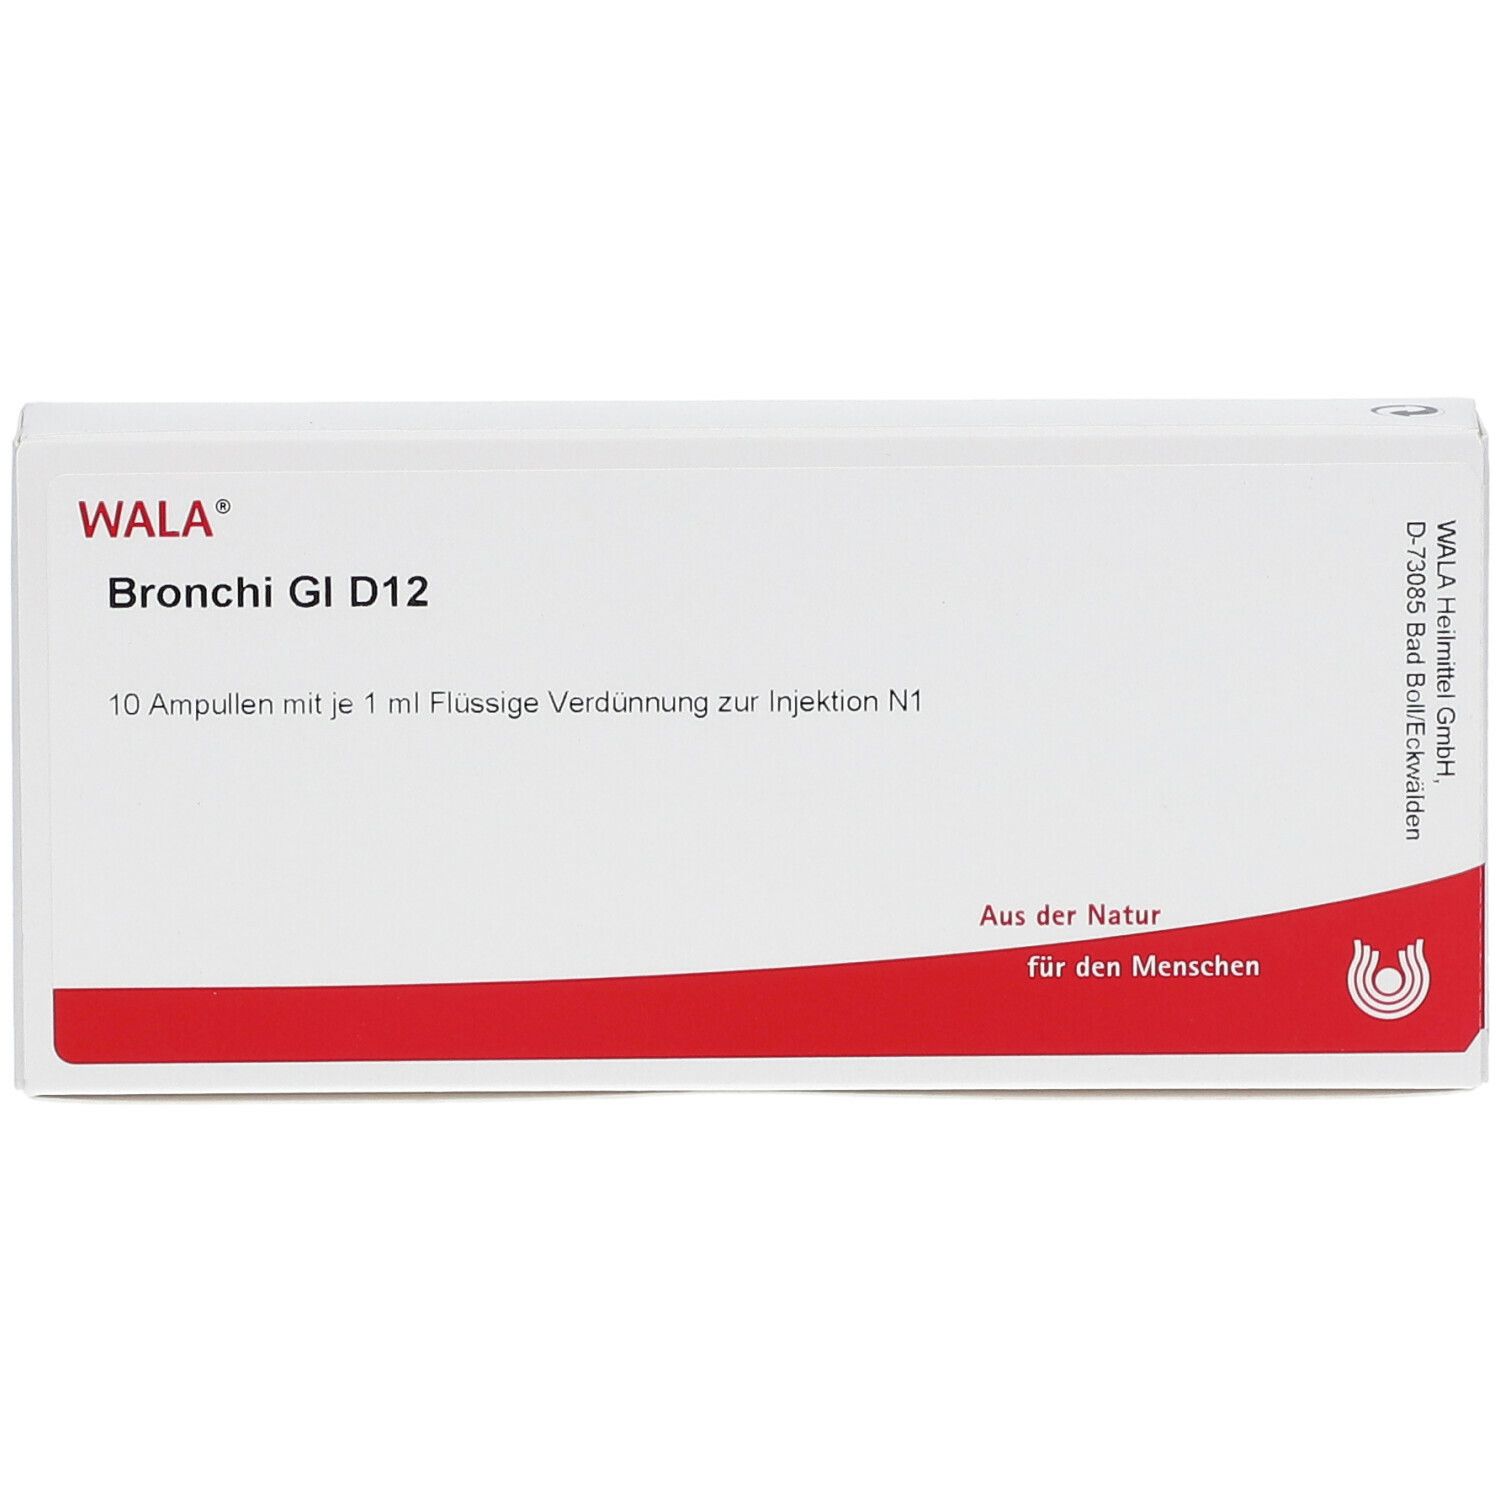 WALA® Bronchi Gl D 12